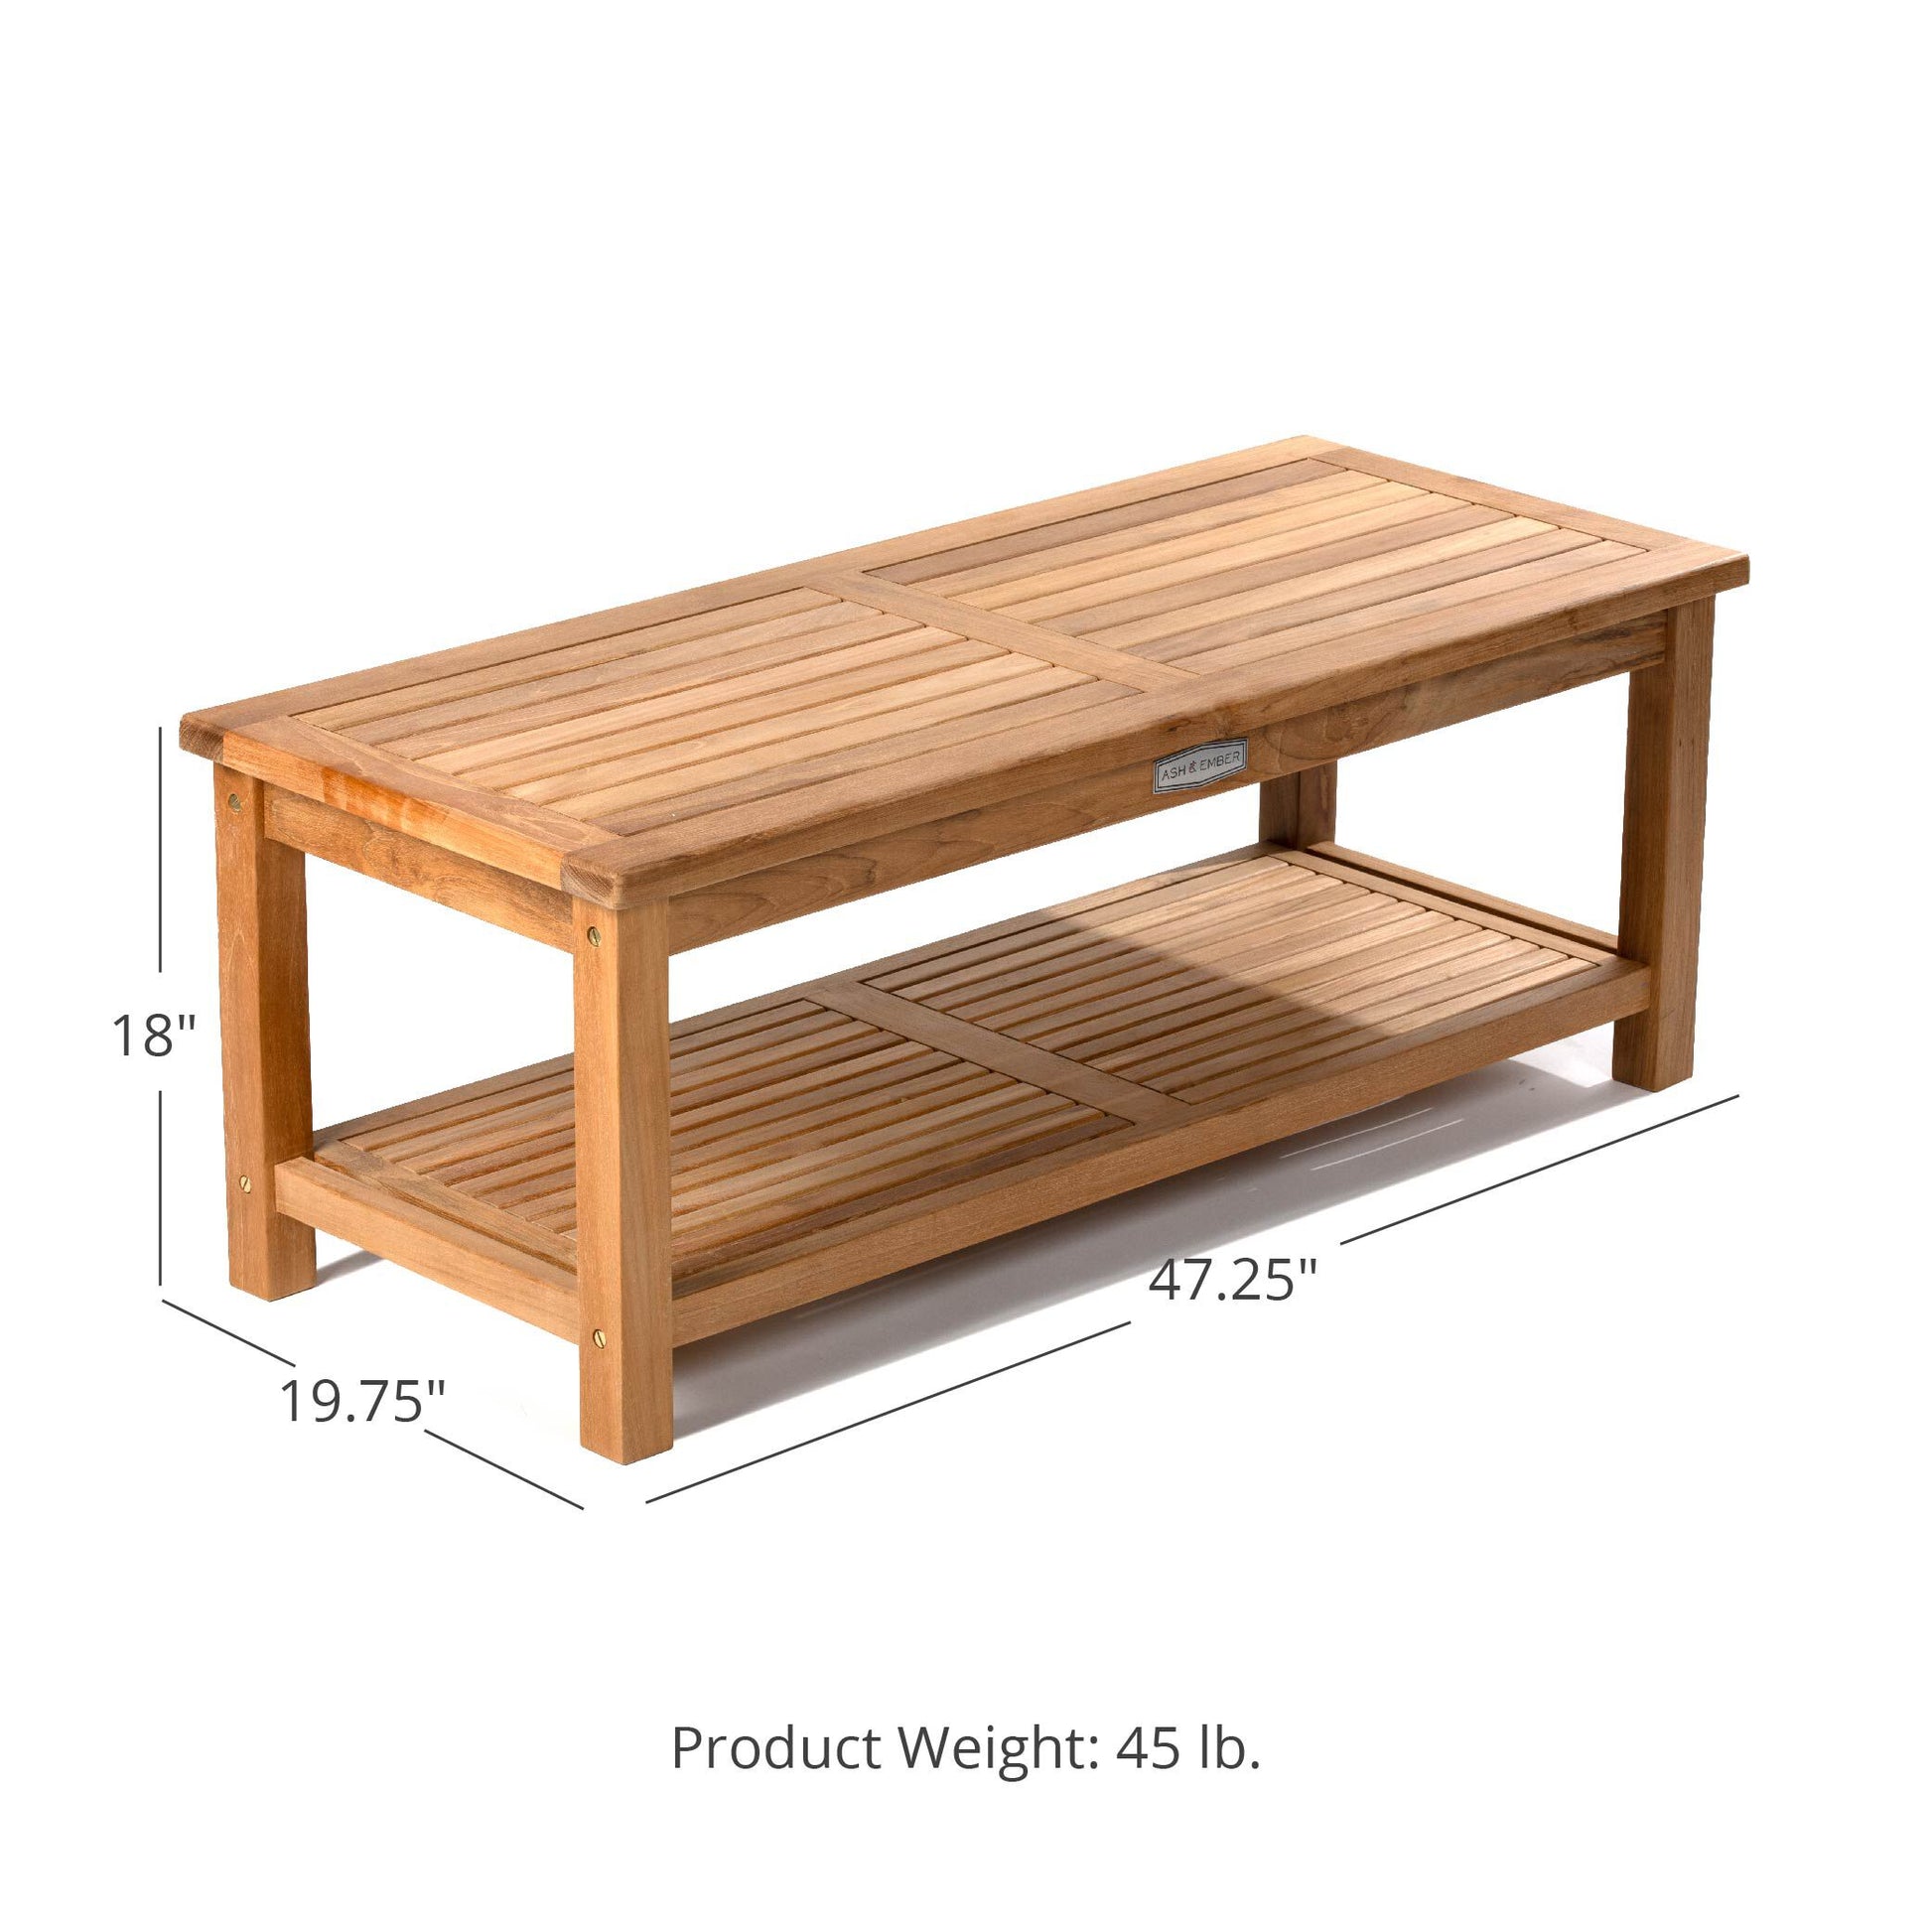 Sierra Grade A Teak 47" Outdoor Coffee Table with Shelf